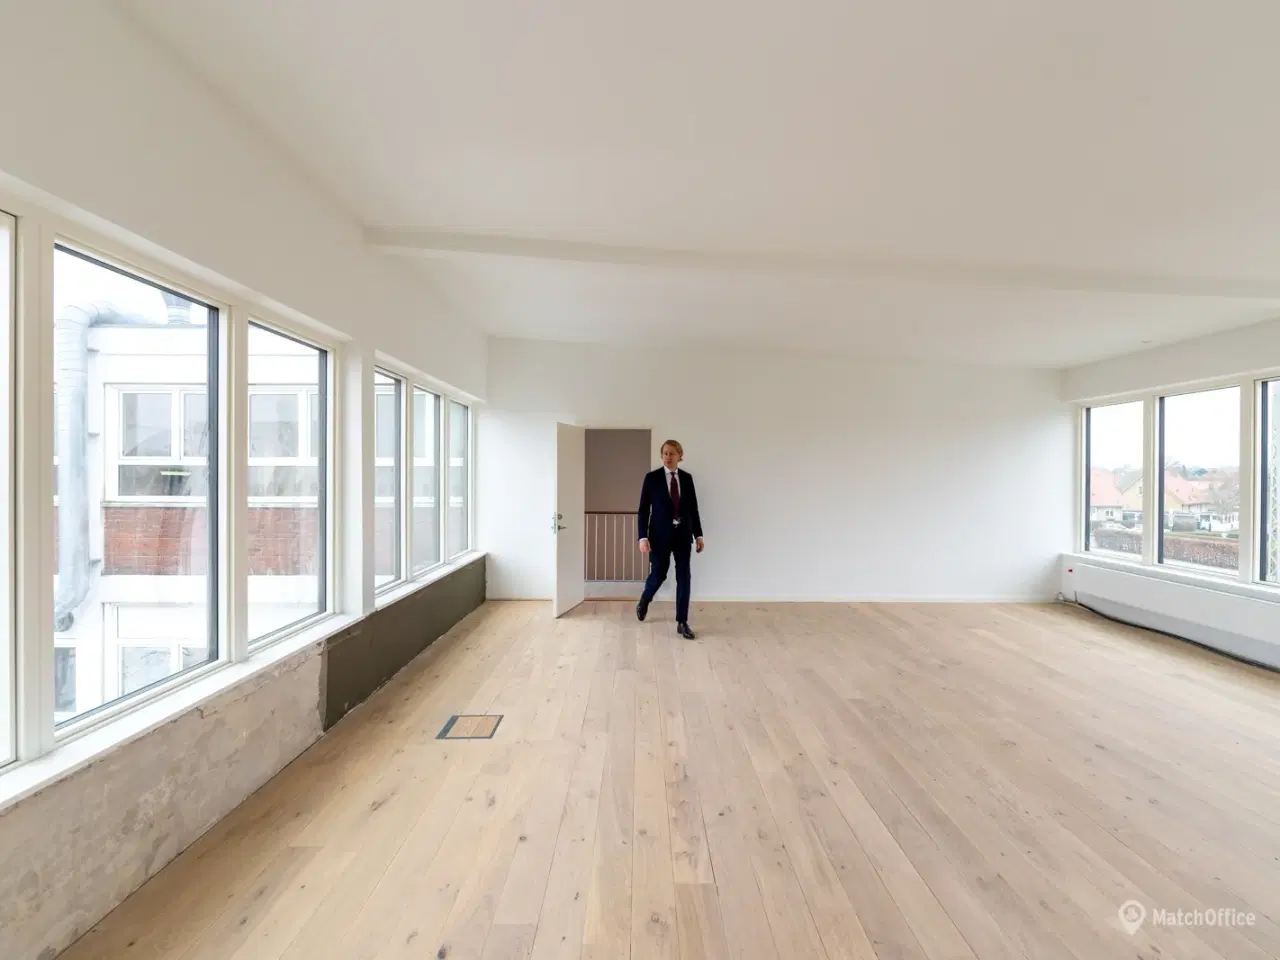 Billede 2 - Moderne. luksuriøst og lyst kontor med åben planløsning i Valby